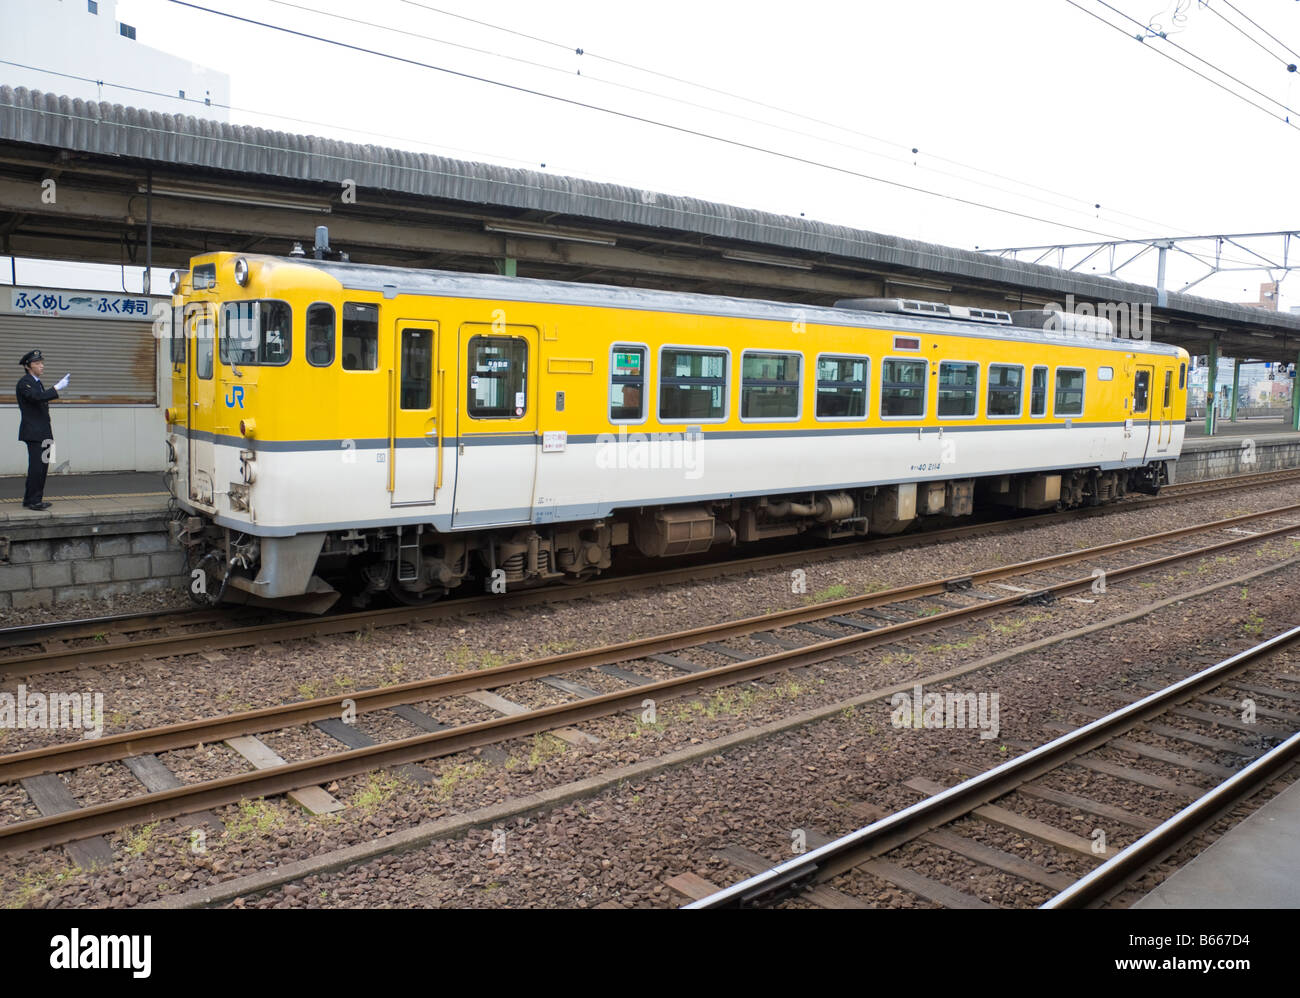 El guardia ve fuera de un color amarillo brillante único carro de tren diesel. Los trenes como este son comunes en japonés rural líneas de ferrocarril. Foto de stock